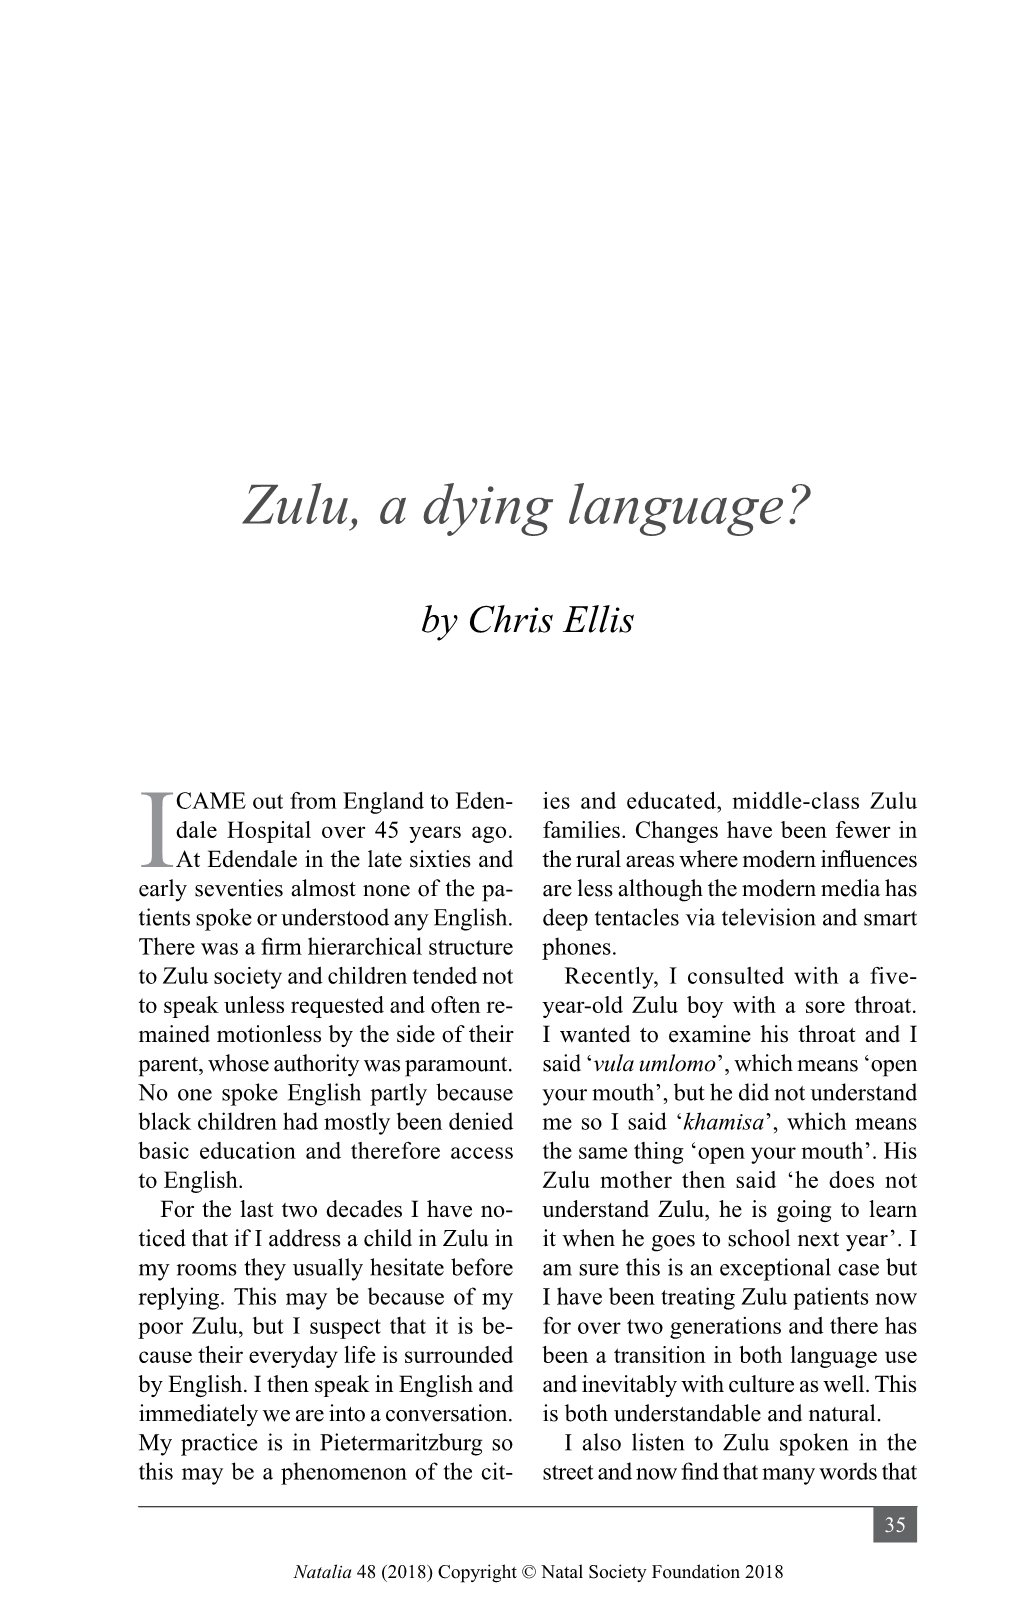 Zulu, a Dying Language?